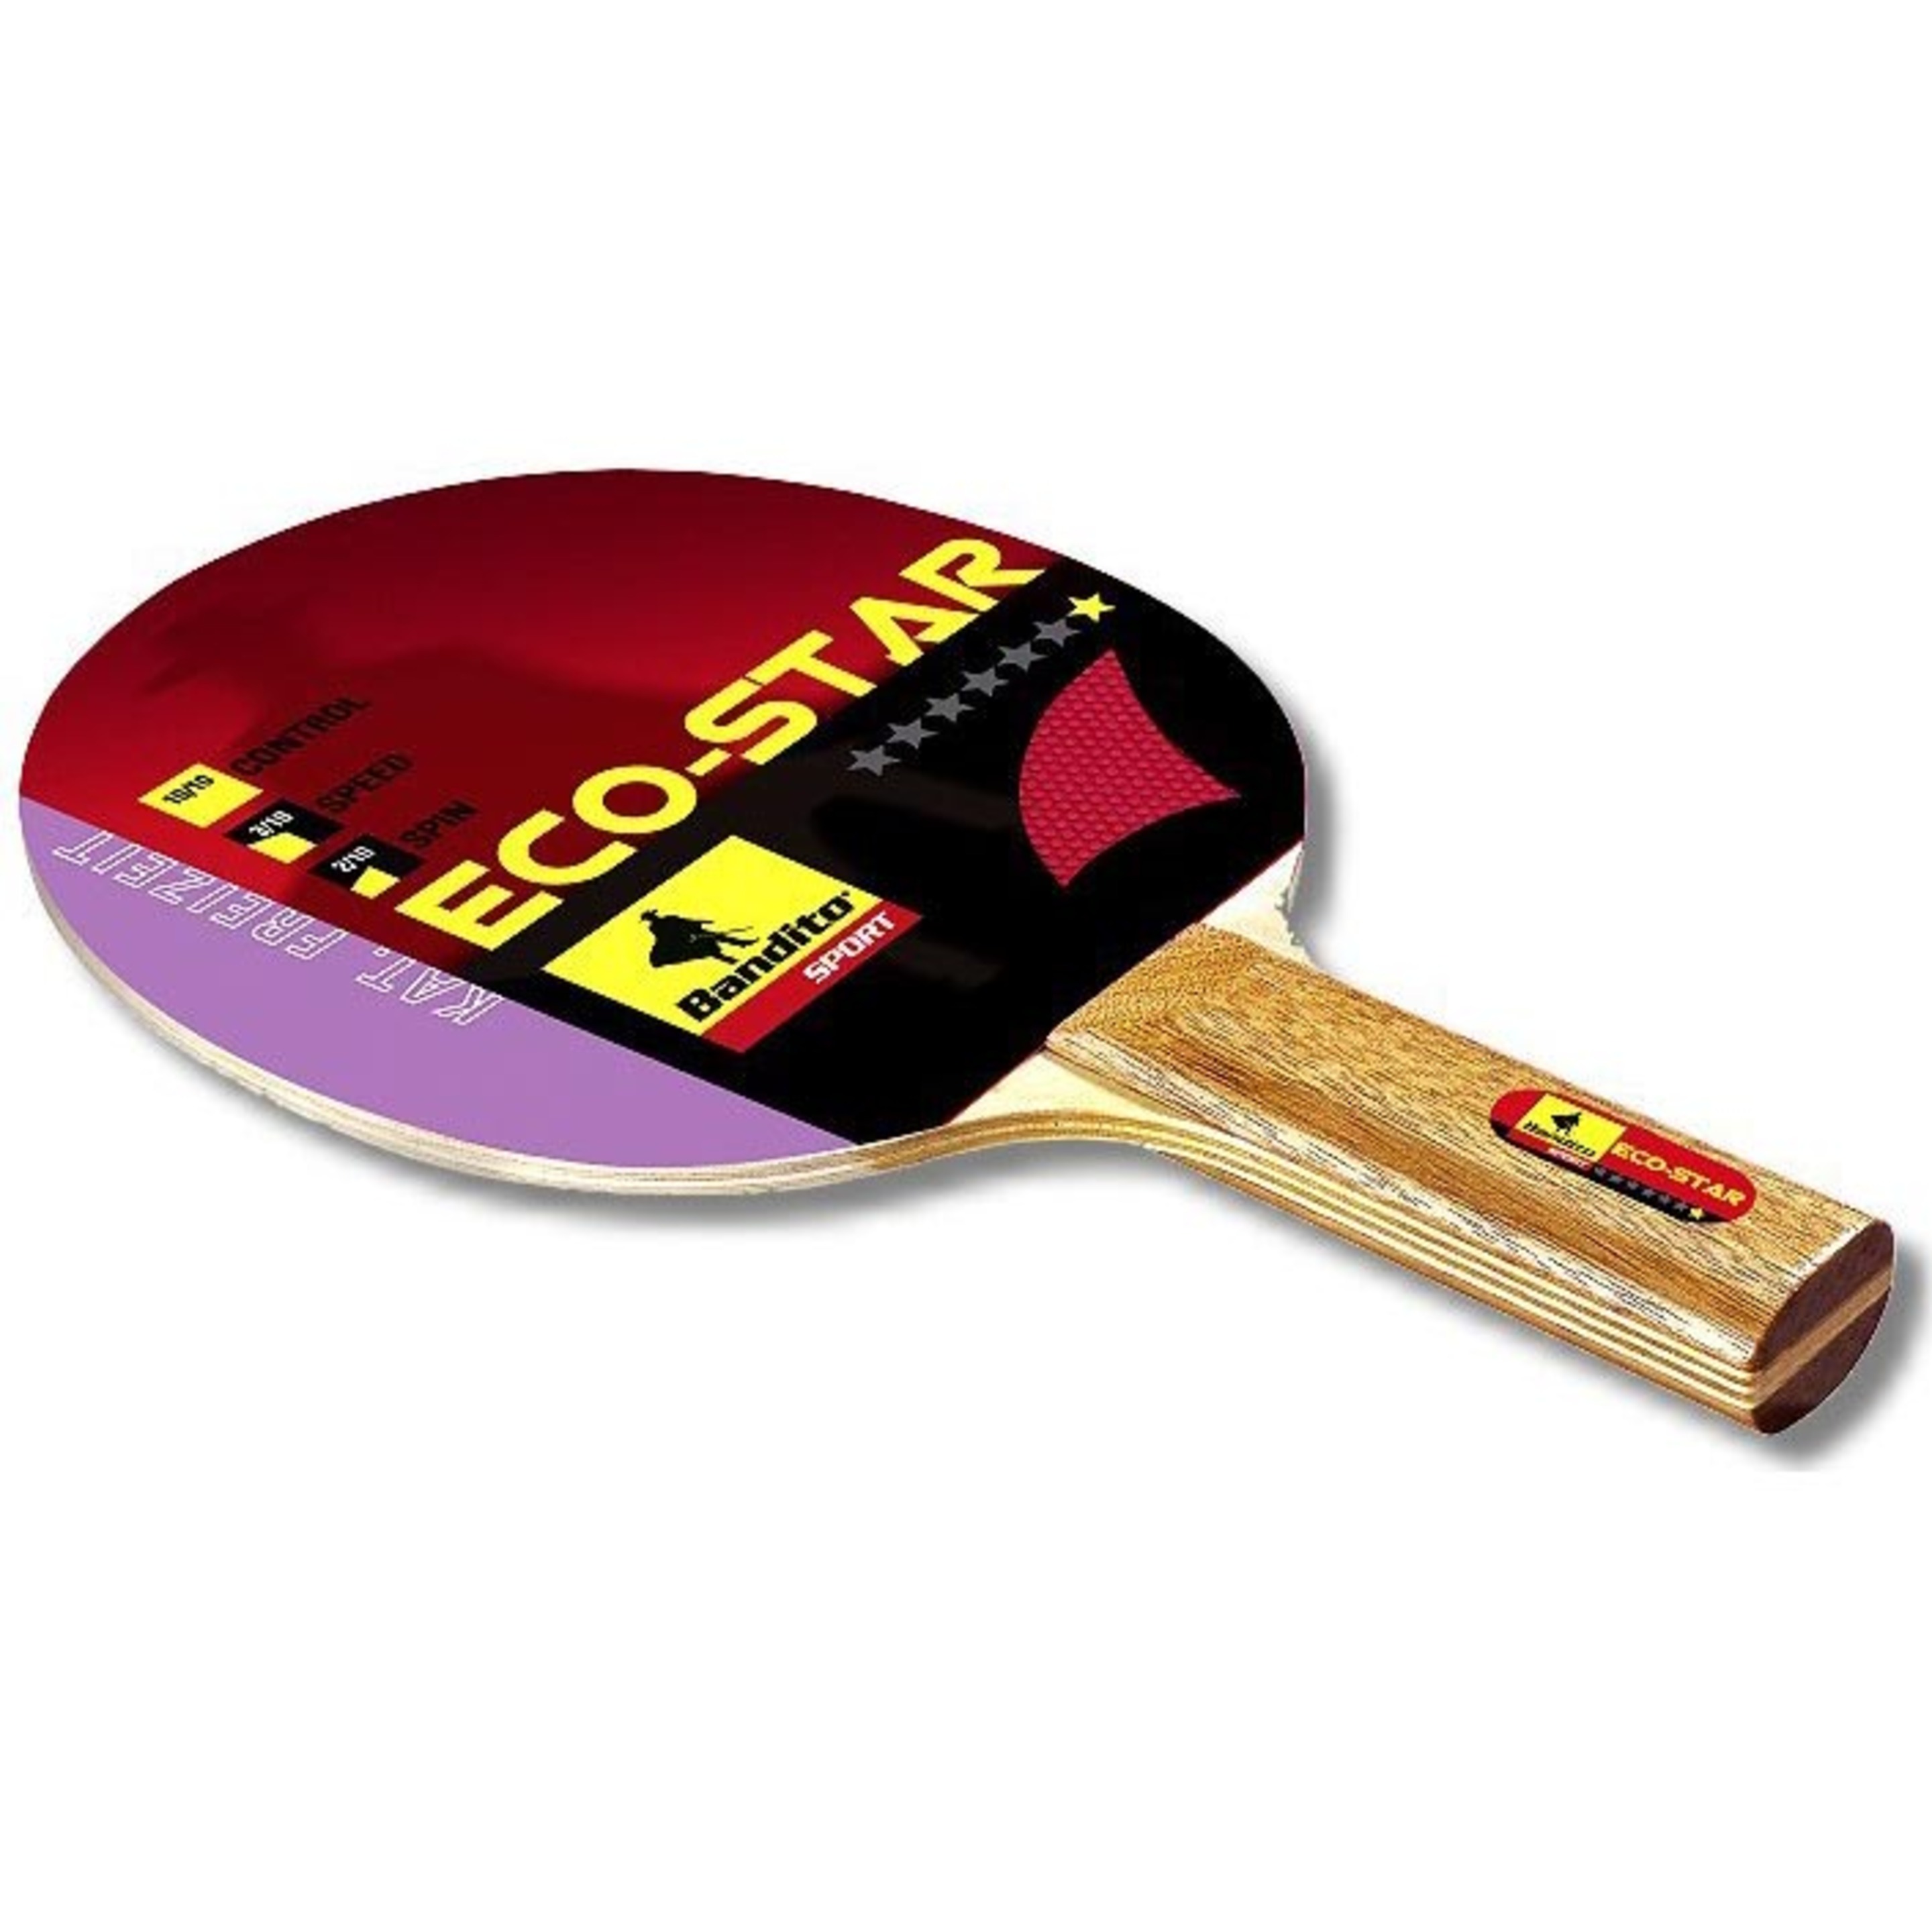 Pack 2 Pala Ping Pong + 3 Bolas + Red Bandito Sport Eco-star 4110.01 - Negro - Pack 2 Pala Ping Pong + 3 Bolas + R  MKP